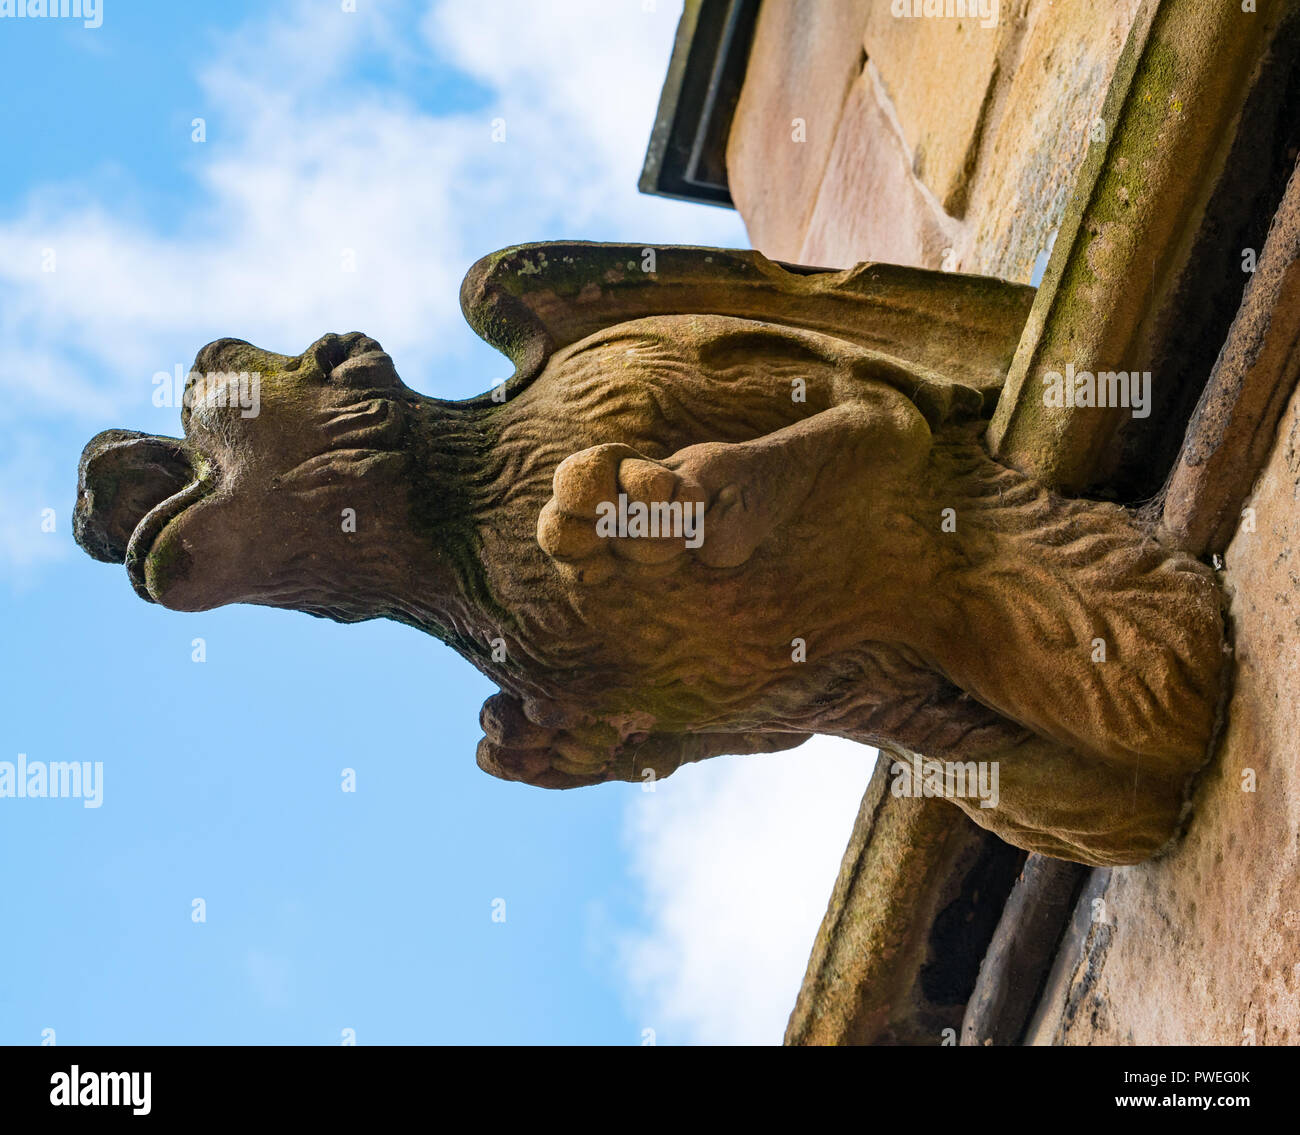 Erodiert Sandstein Tier mit Flügeln Gargoyle, St. Mary's Episcopal Church, Dalkeith, Midlothian, Schottland, Großbritannien Stockfoto